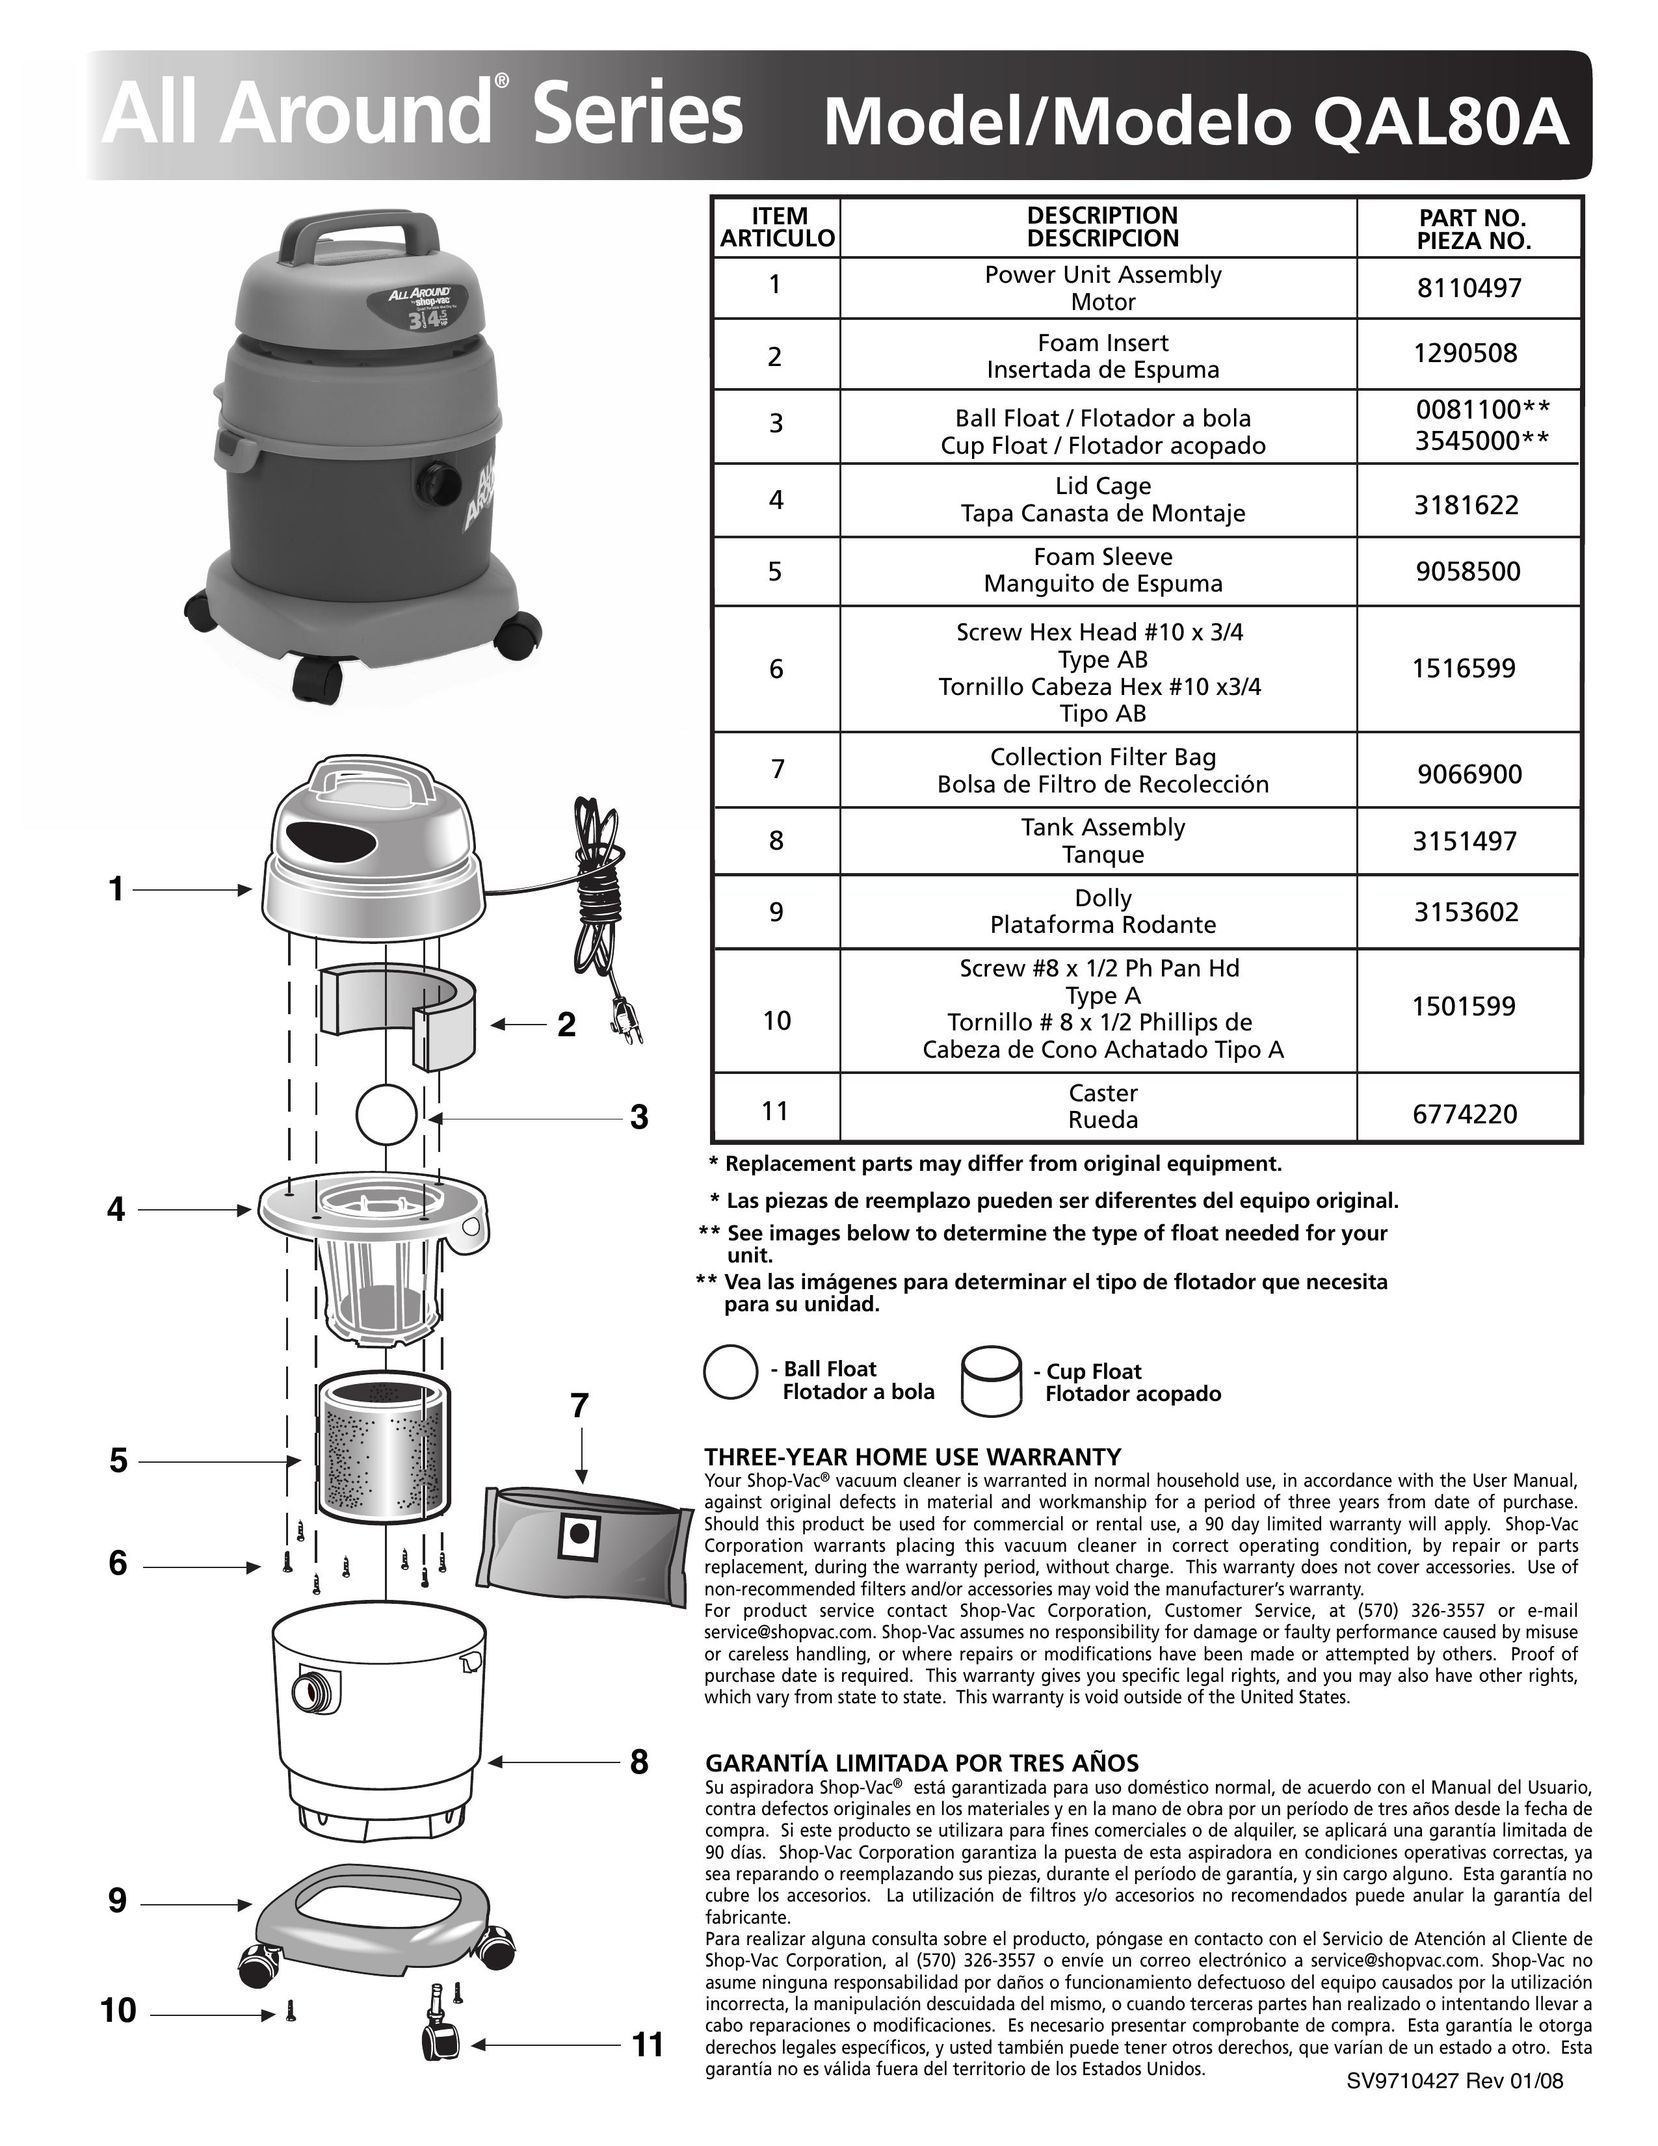 Shop-Vac QAL80A Vacuum Cleaner User Manual